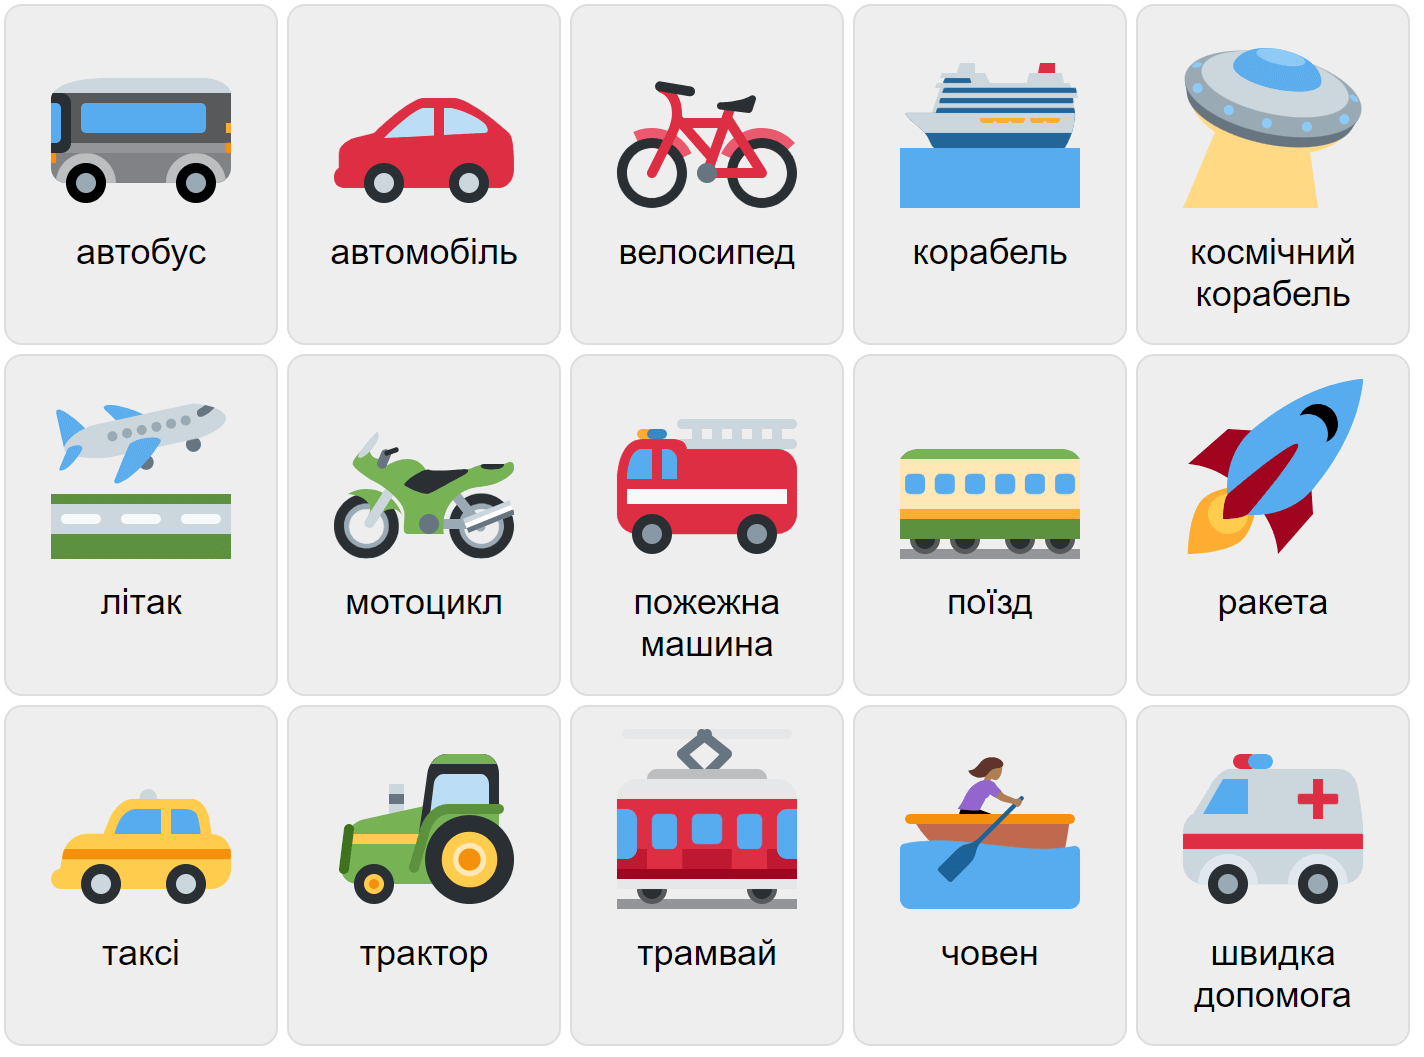 Vehículos en ucraniano